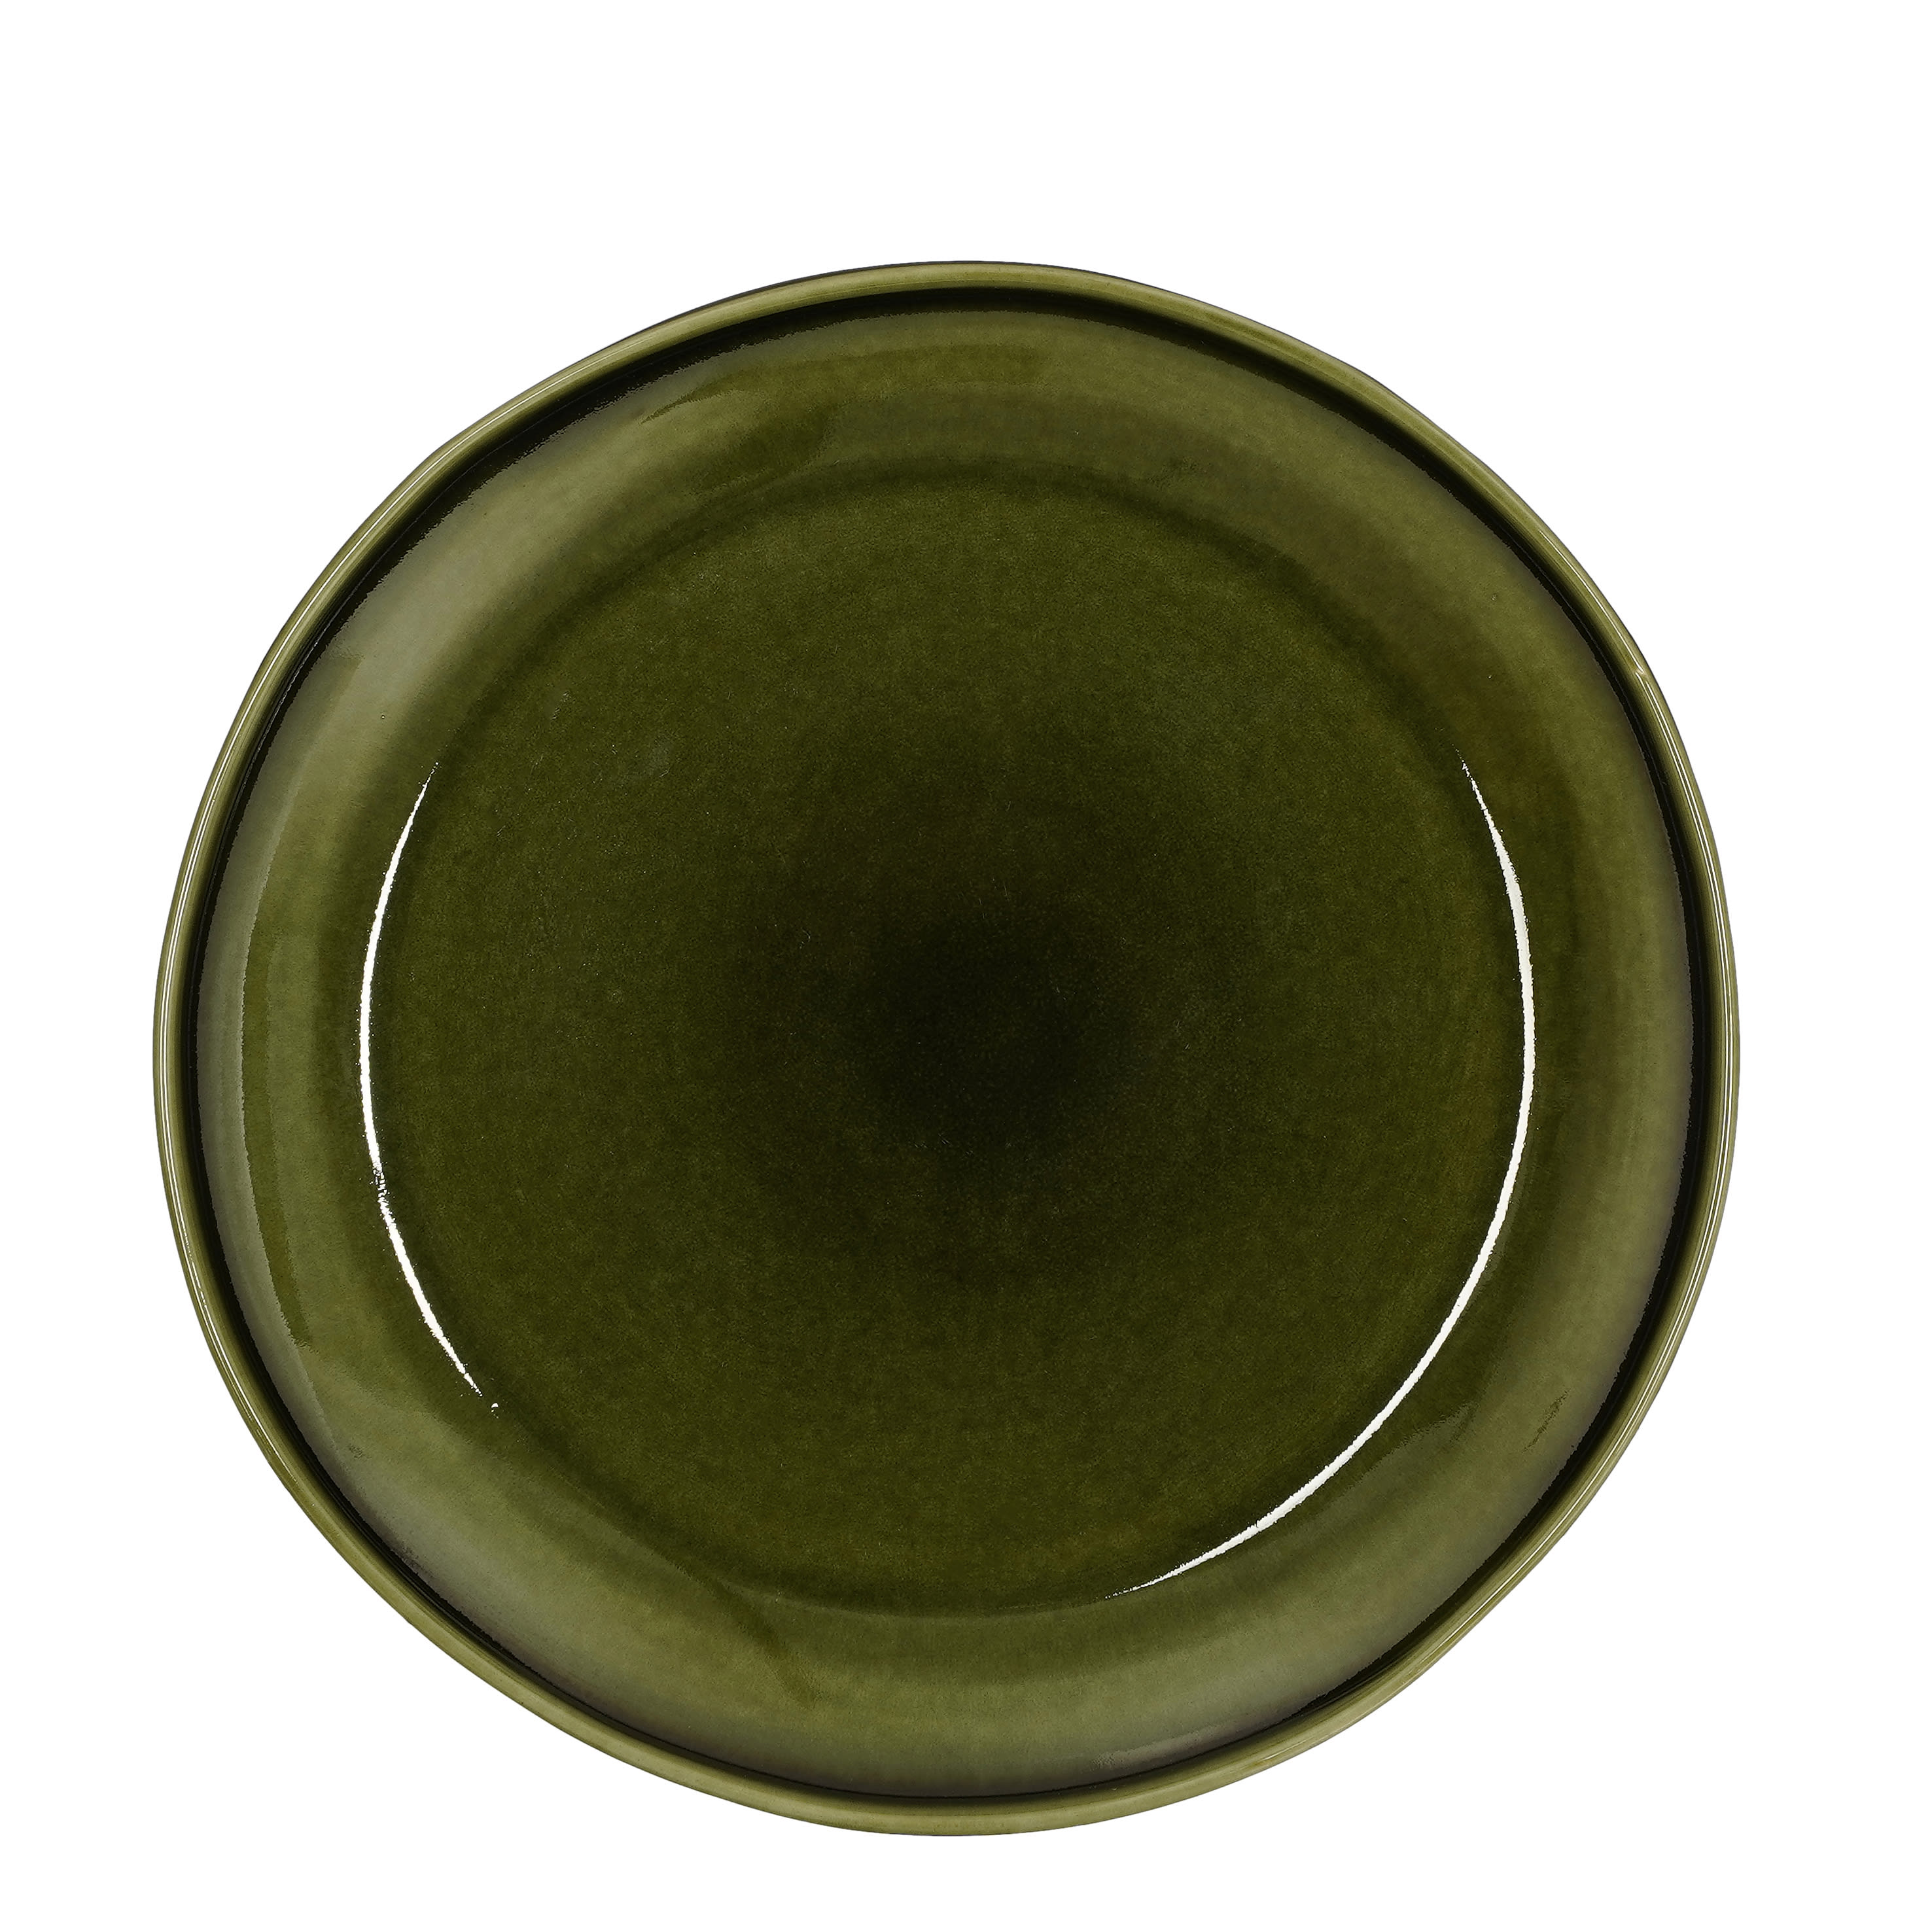 Plato llano cerámica verde y blanco -Vajillas